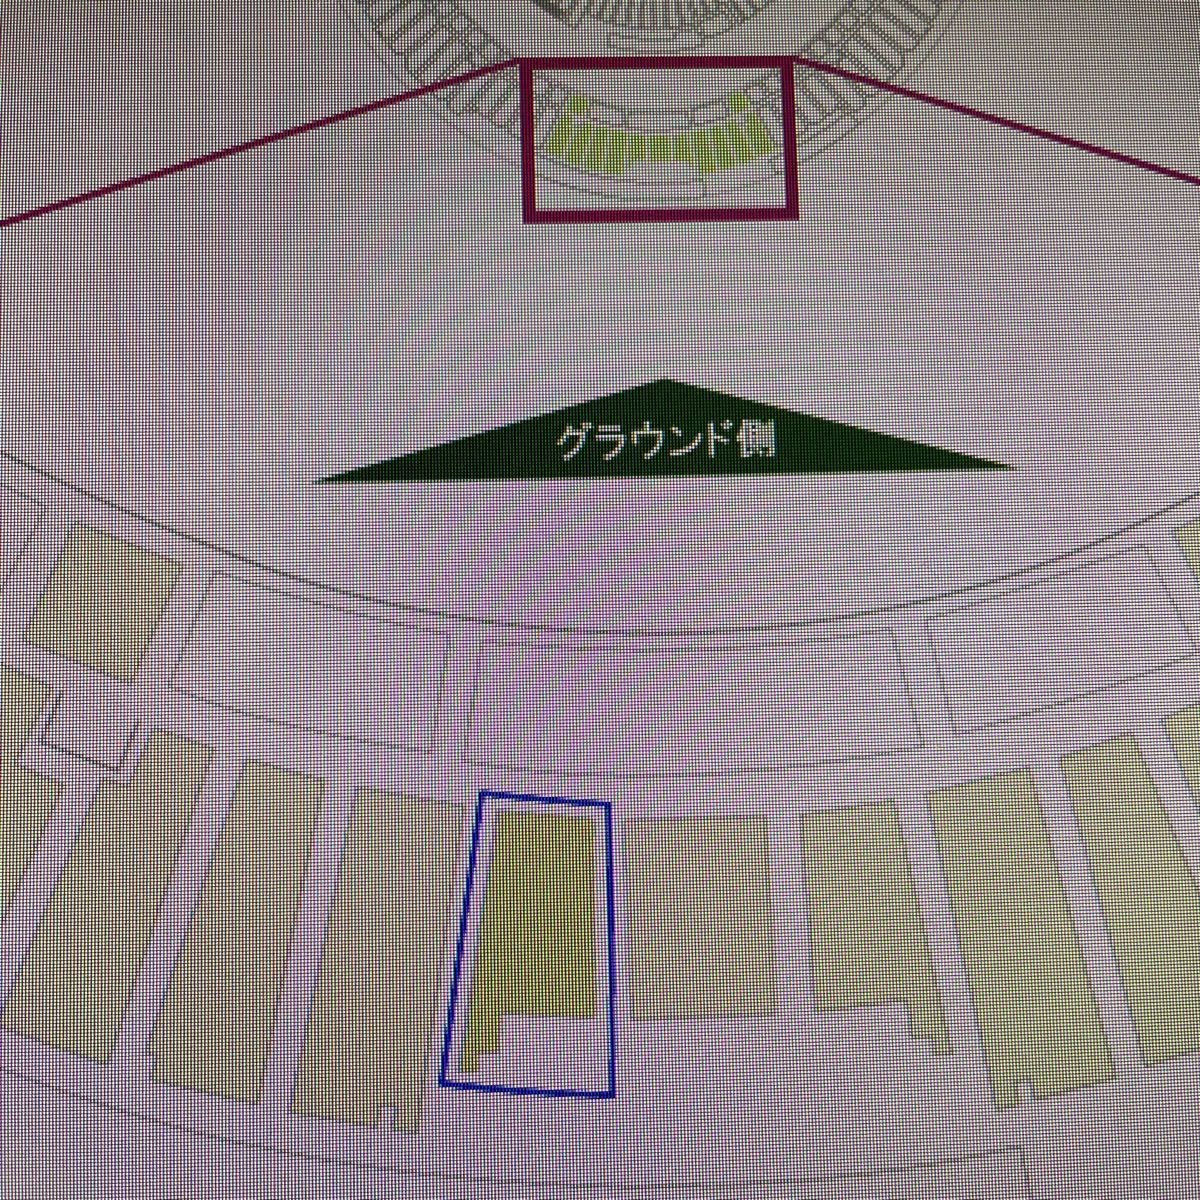 7月10日 オリックス対千葉ロッテ ほっともっと神戸 2階C指定席中央 デジタルチケット_画像2